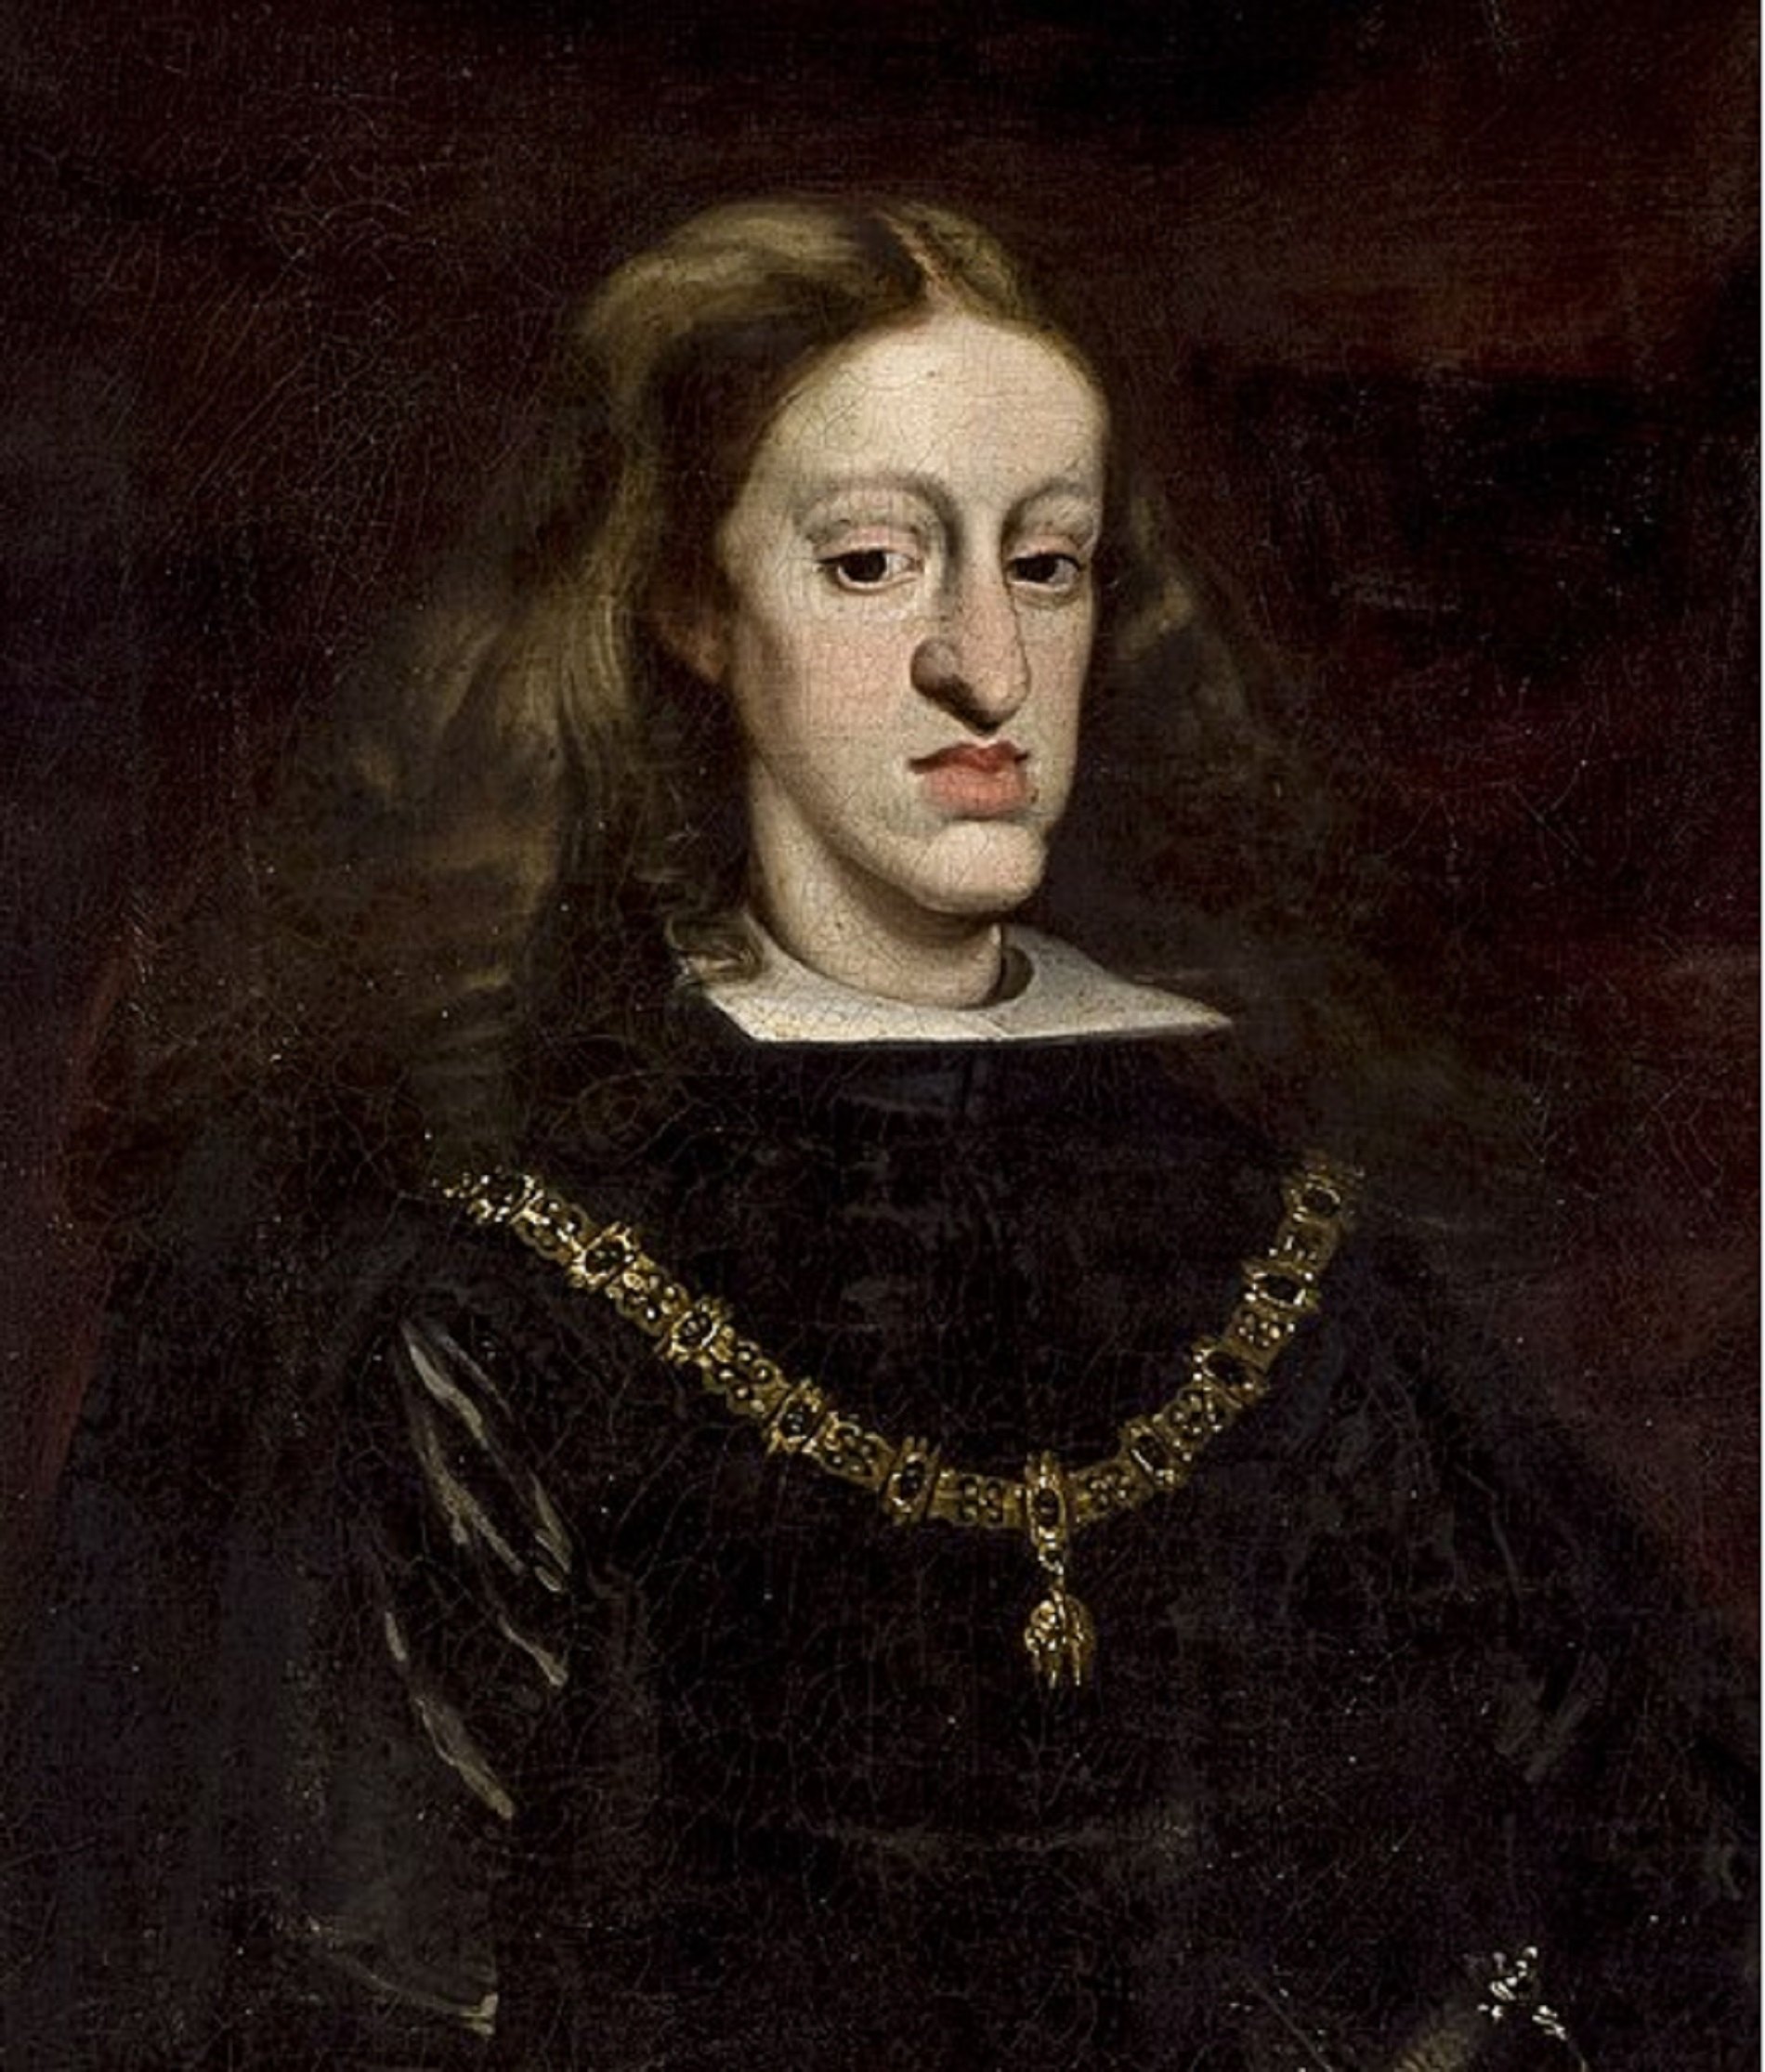 Mor Carles l'Encantat, el darrer rei Habsburg de la monarquia hispànica